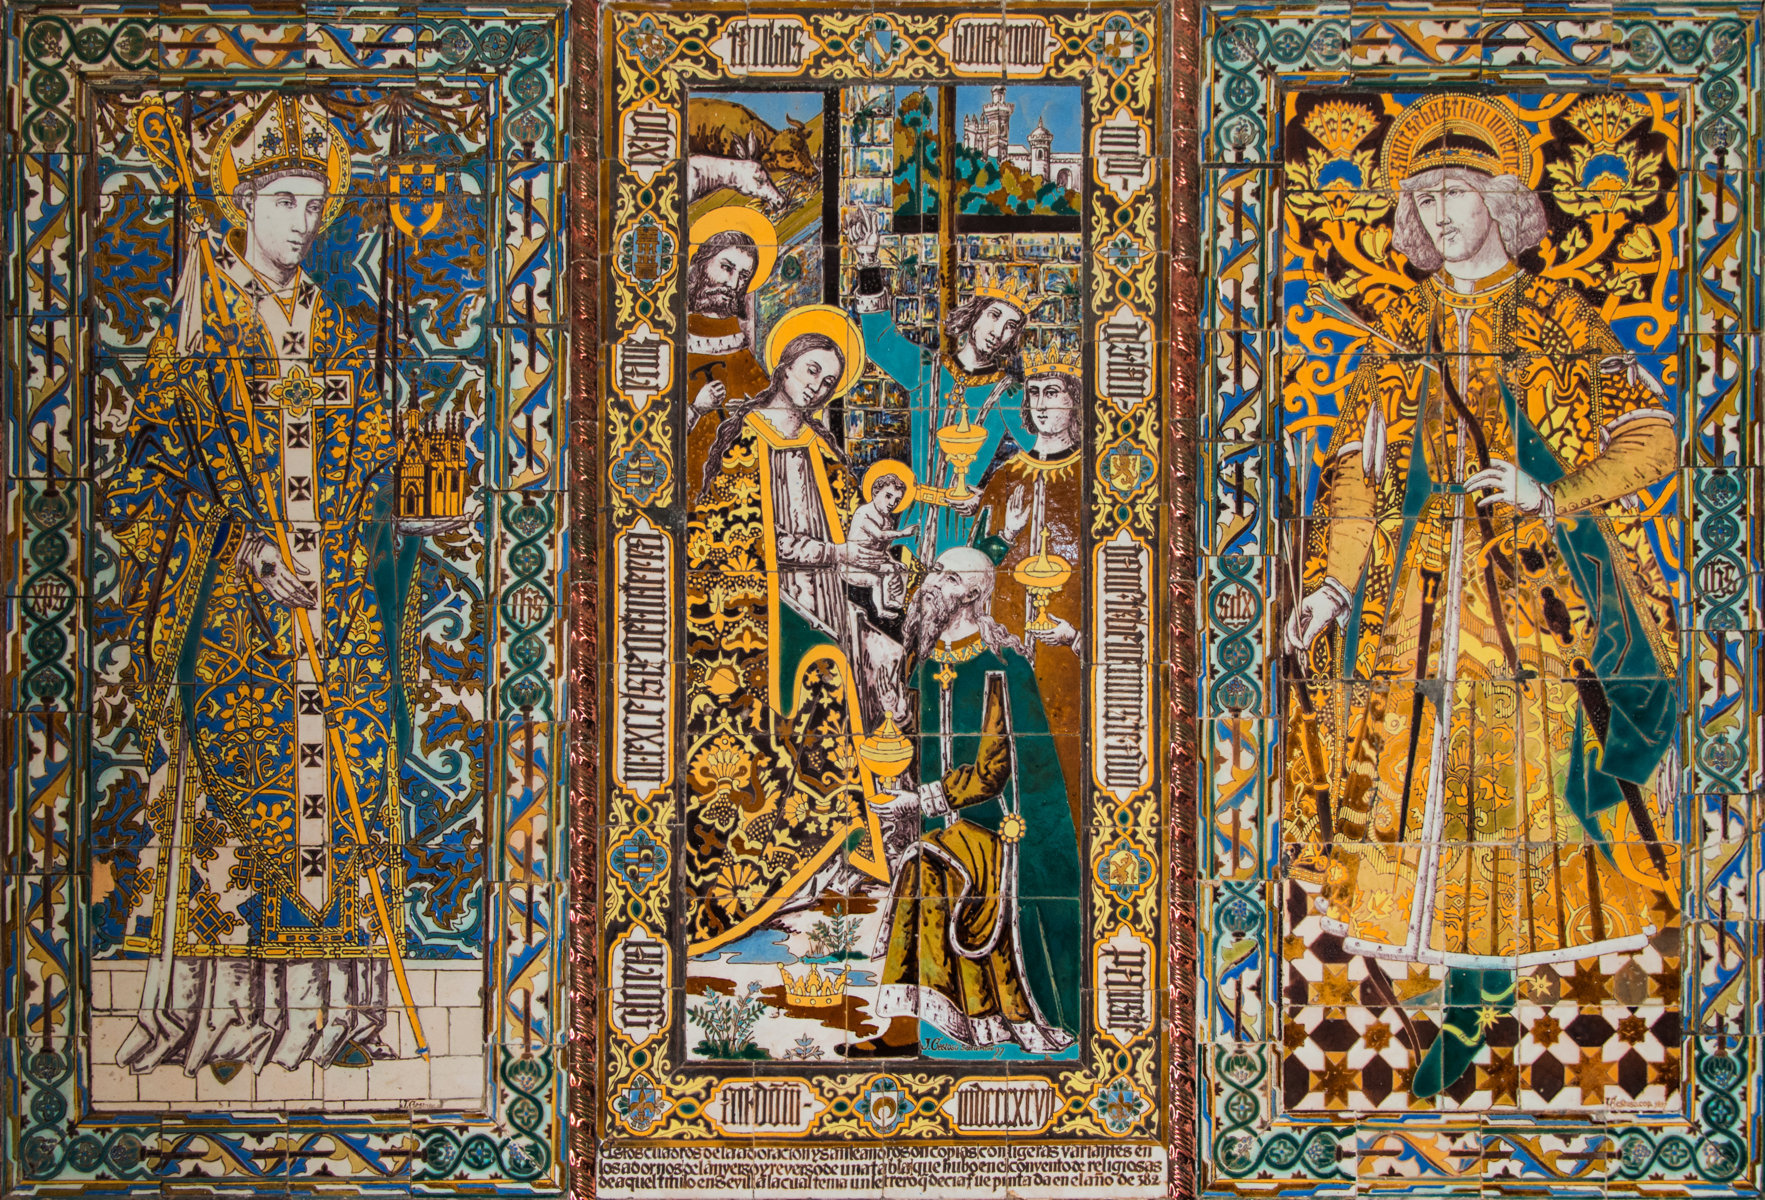 D00176. Año del Centenario de José Gestoso 1917-2017. Adoración de los Reyes Magos. Convento Padres Capuchinos-Sevilla